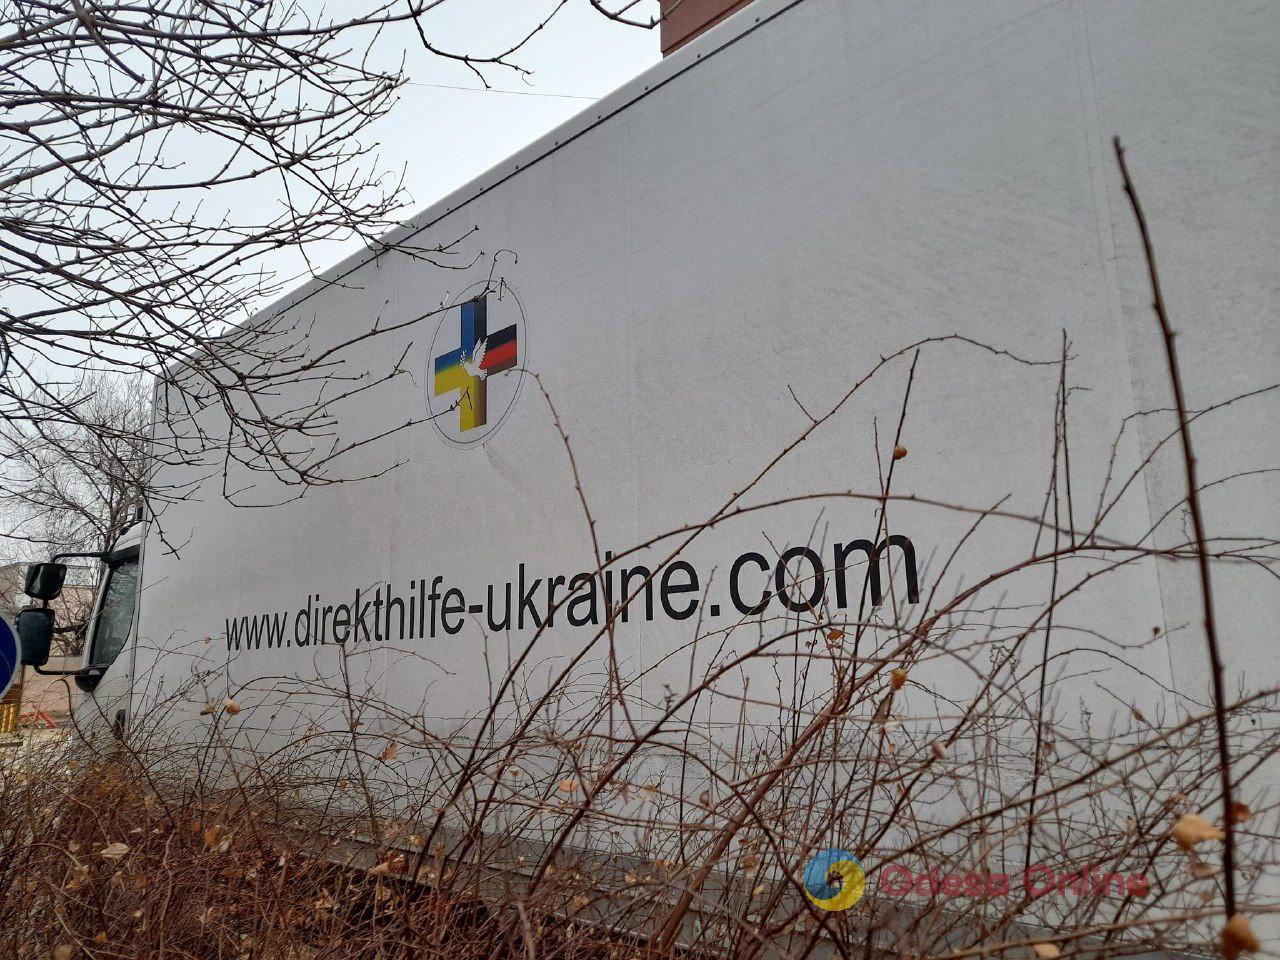 Благотворительная помощь: Одесский инклюзивный центр получил более 2 тонн безглютеновой продукции